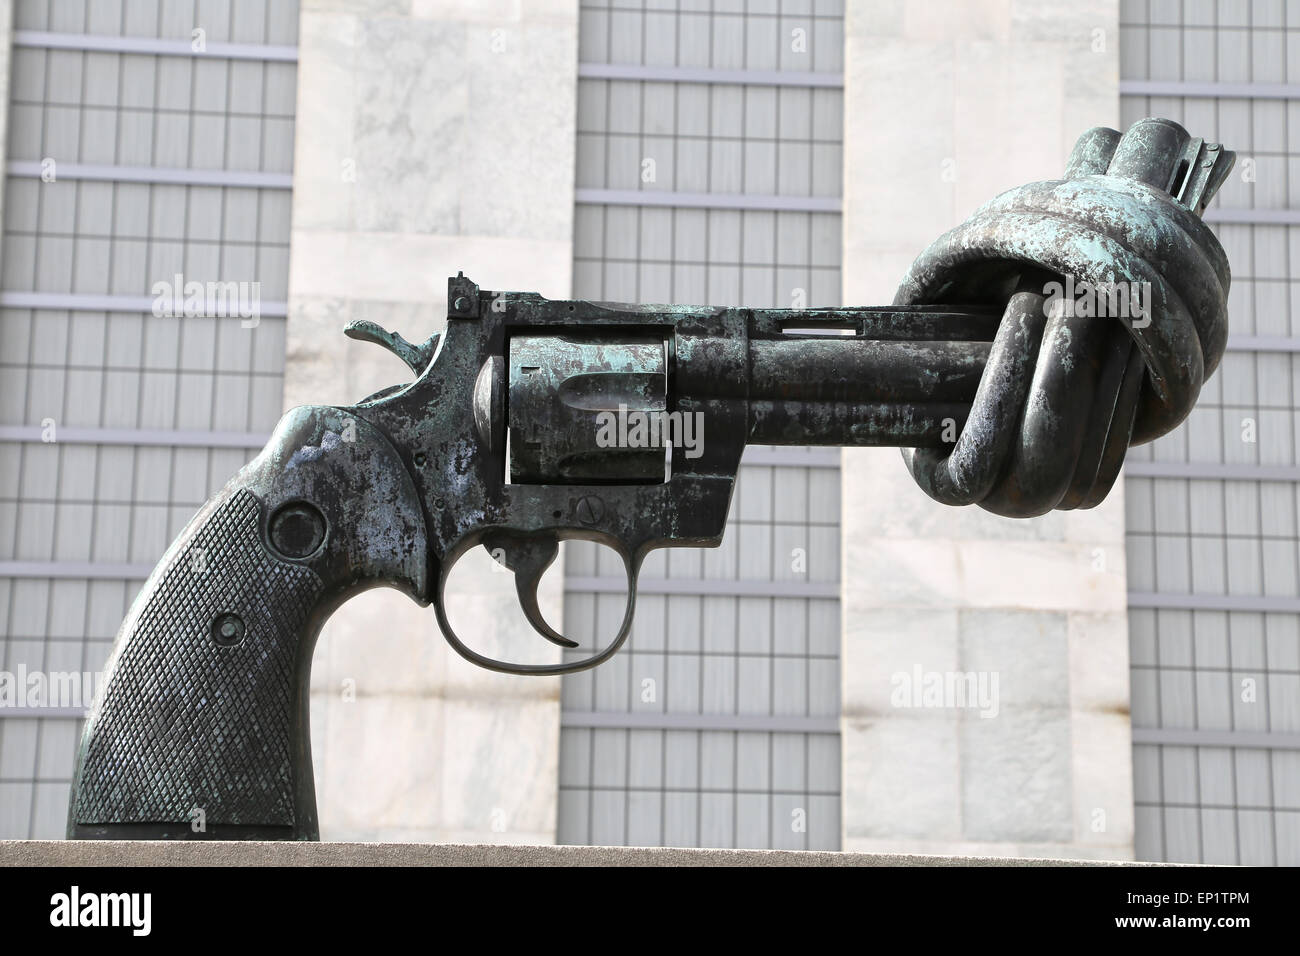 Carl Fredrik Reutersward (geb. 1934). Schwedischer Maler und Bildhauer. Skulptur der Gewaltlosigkeit. Bronze. Revolver mit verknoteten Lauf. Stockfoto